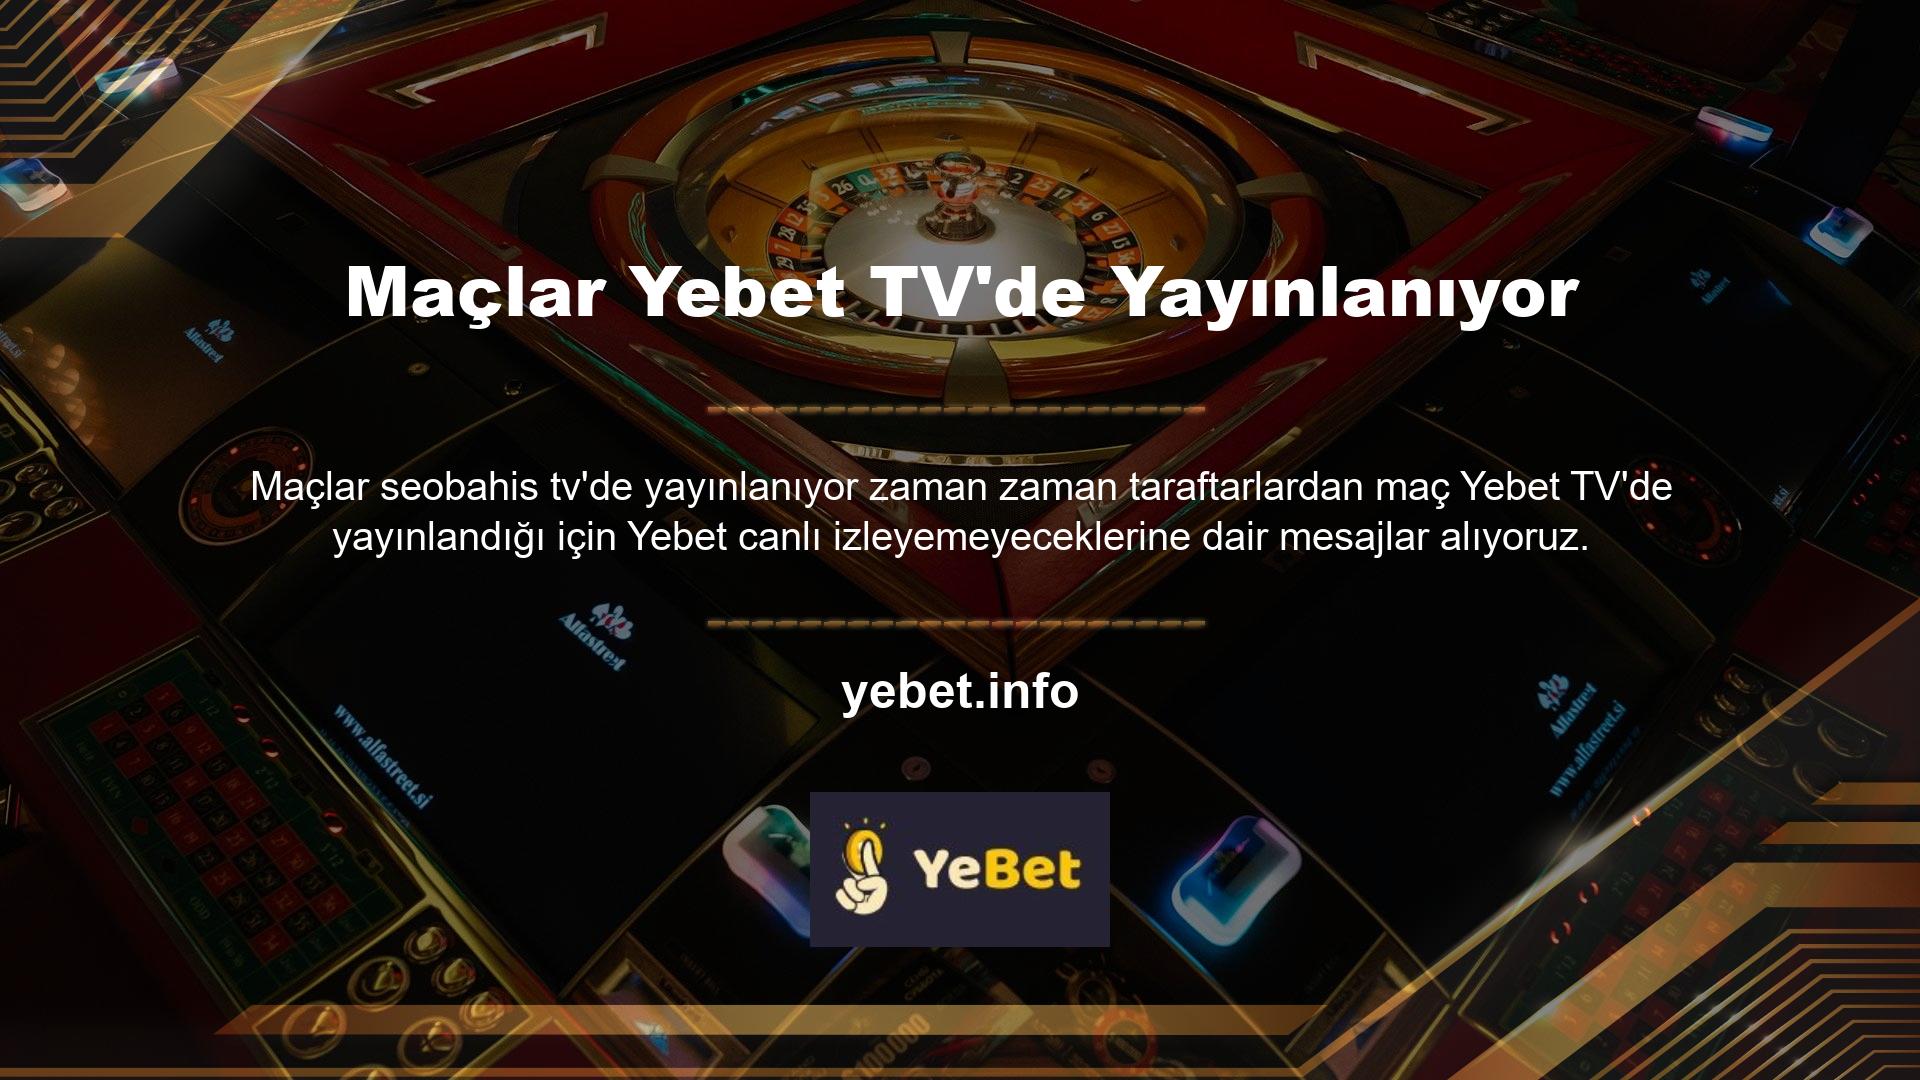 Yebet I Can't Access incelememizde ayrıntılı olarak açıklandığı gibi, yabancı lisanslı canlı casino siteleri yasa dışı kabul edilir